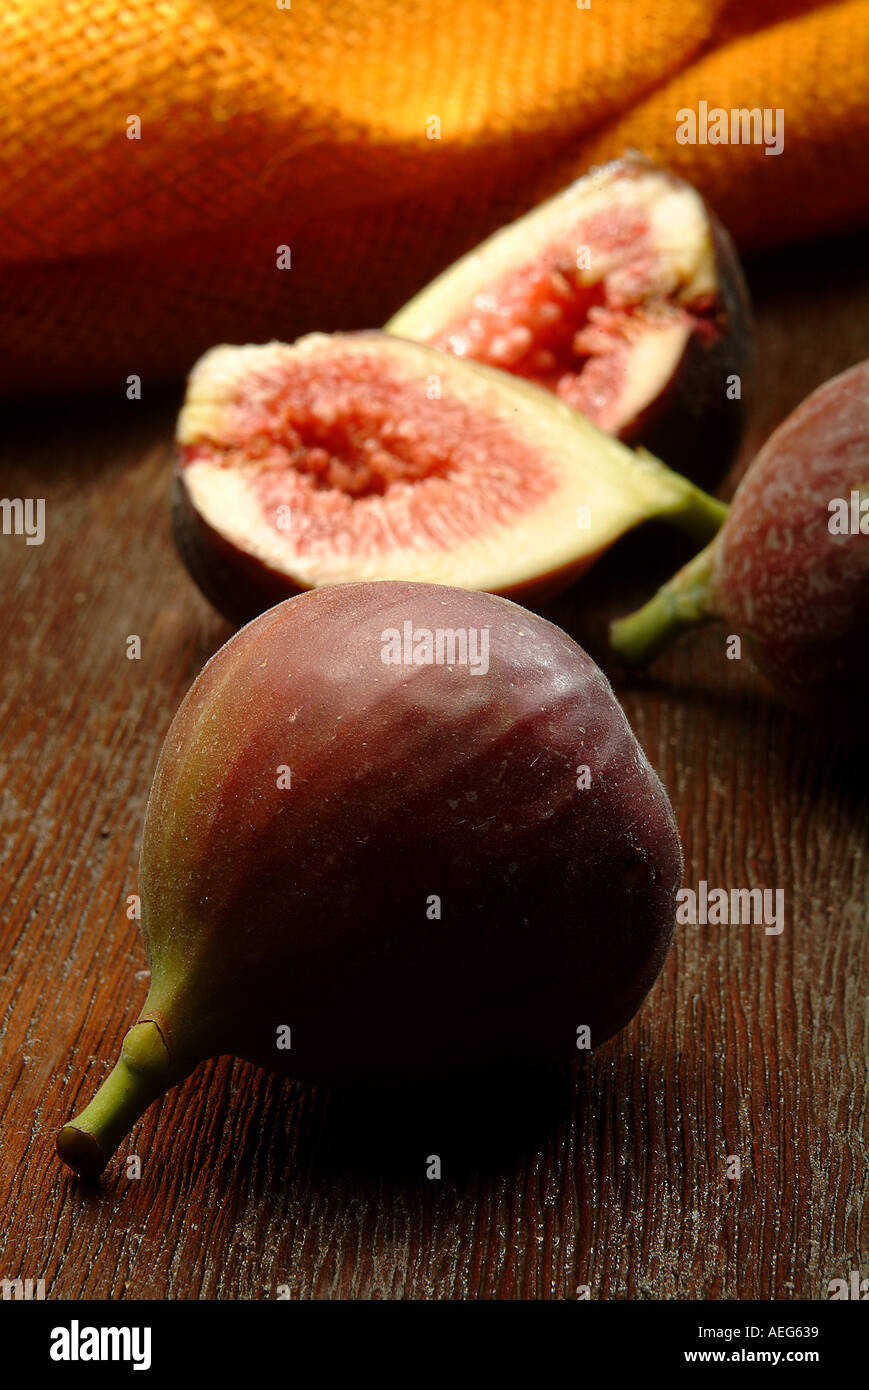 Obst Gemüse Feigen Feigen geschnitten offene Hälfte Essen Obst sonstige Hintergrundtextur Stockfoto